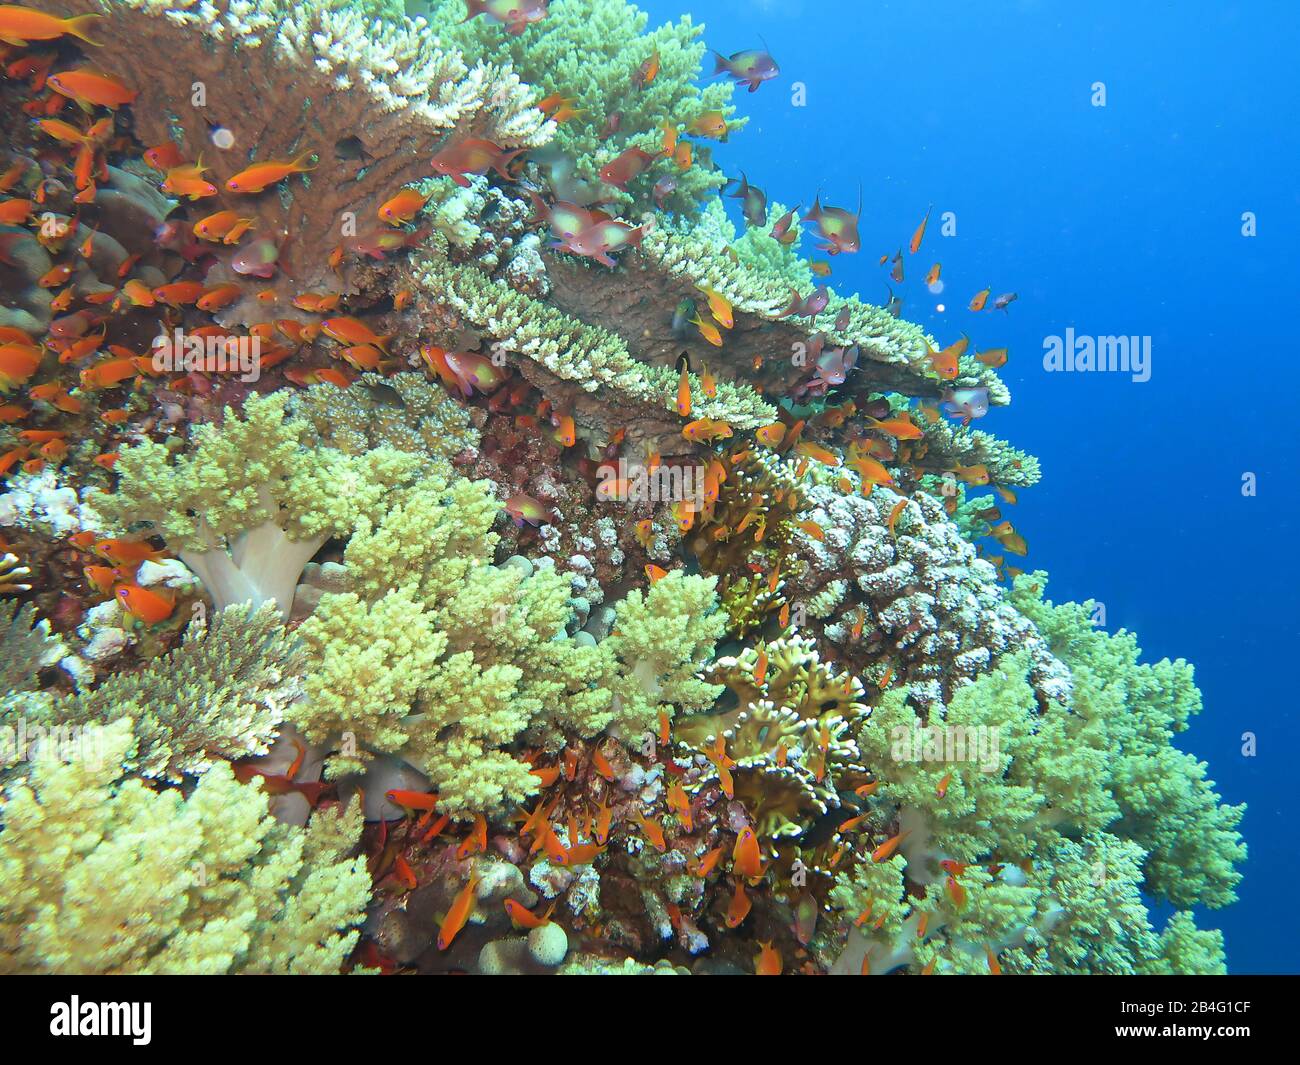 Korallen, Islas Brother, Rotes Meer, Aegypten / Ägypten Foto de stock